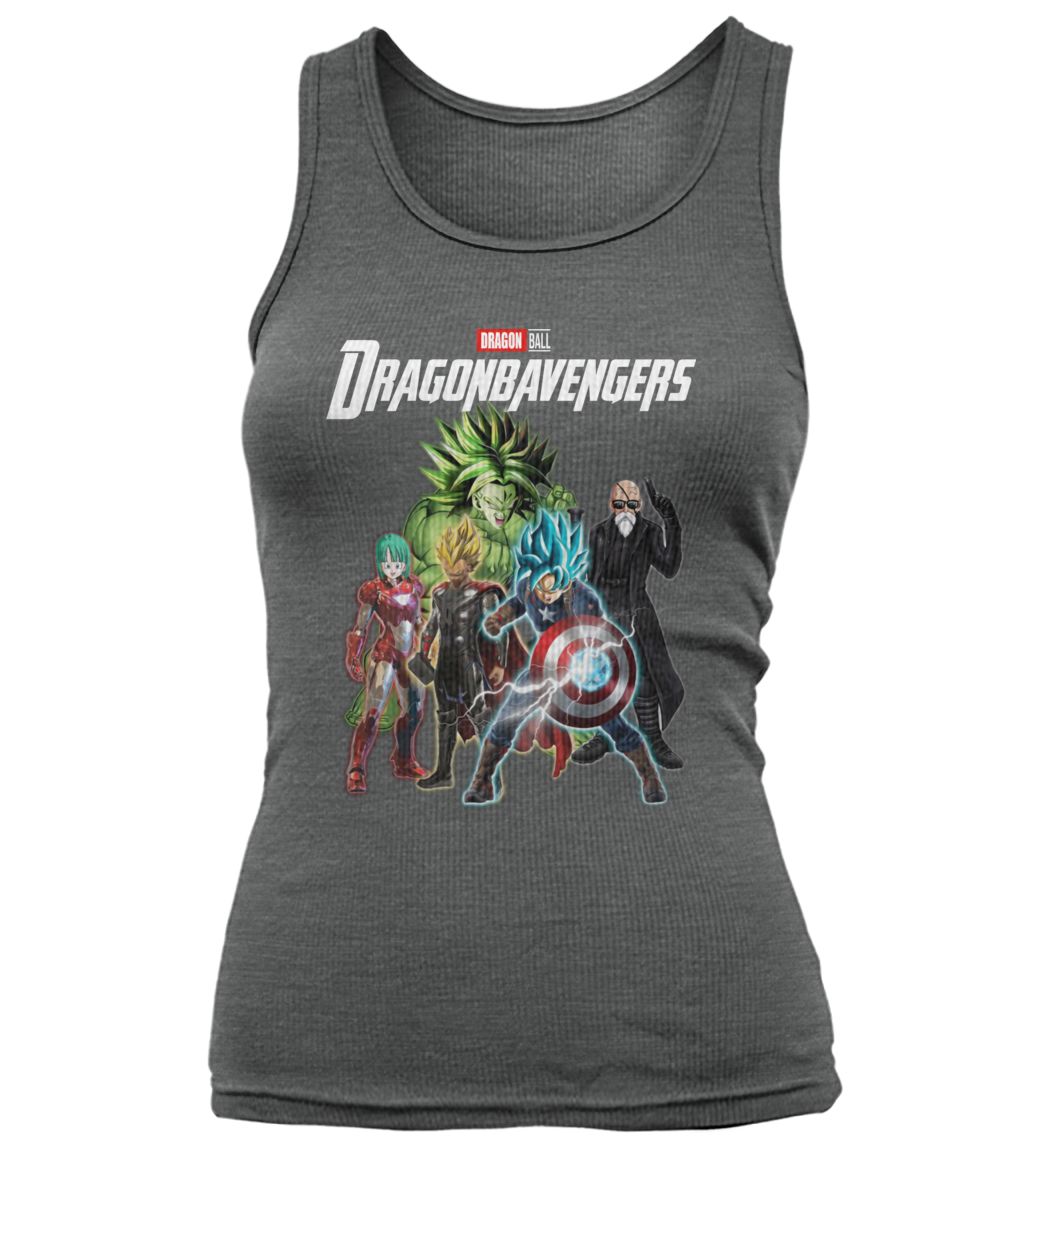 Marvel avengers endgame dragon ball dragonbavengers women's tank top